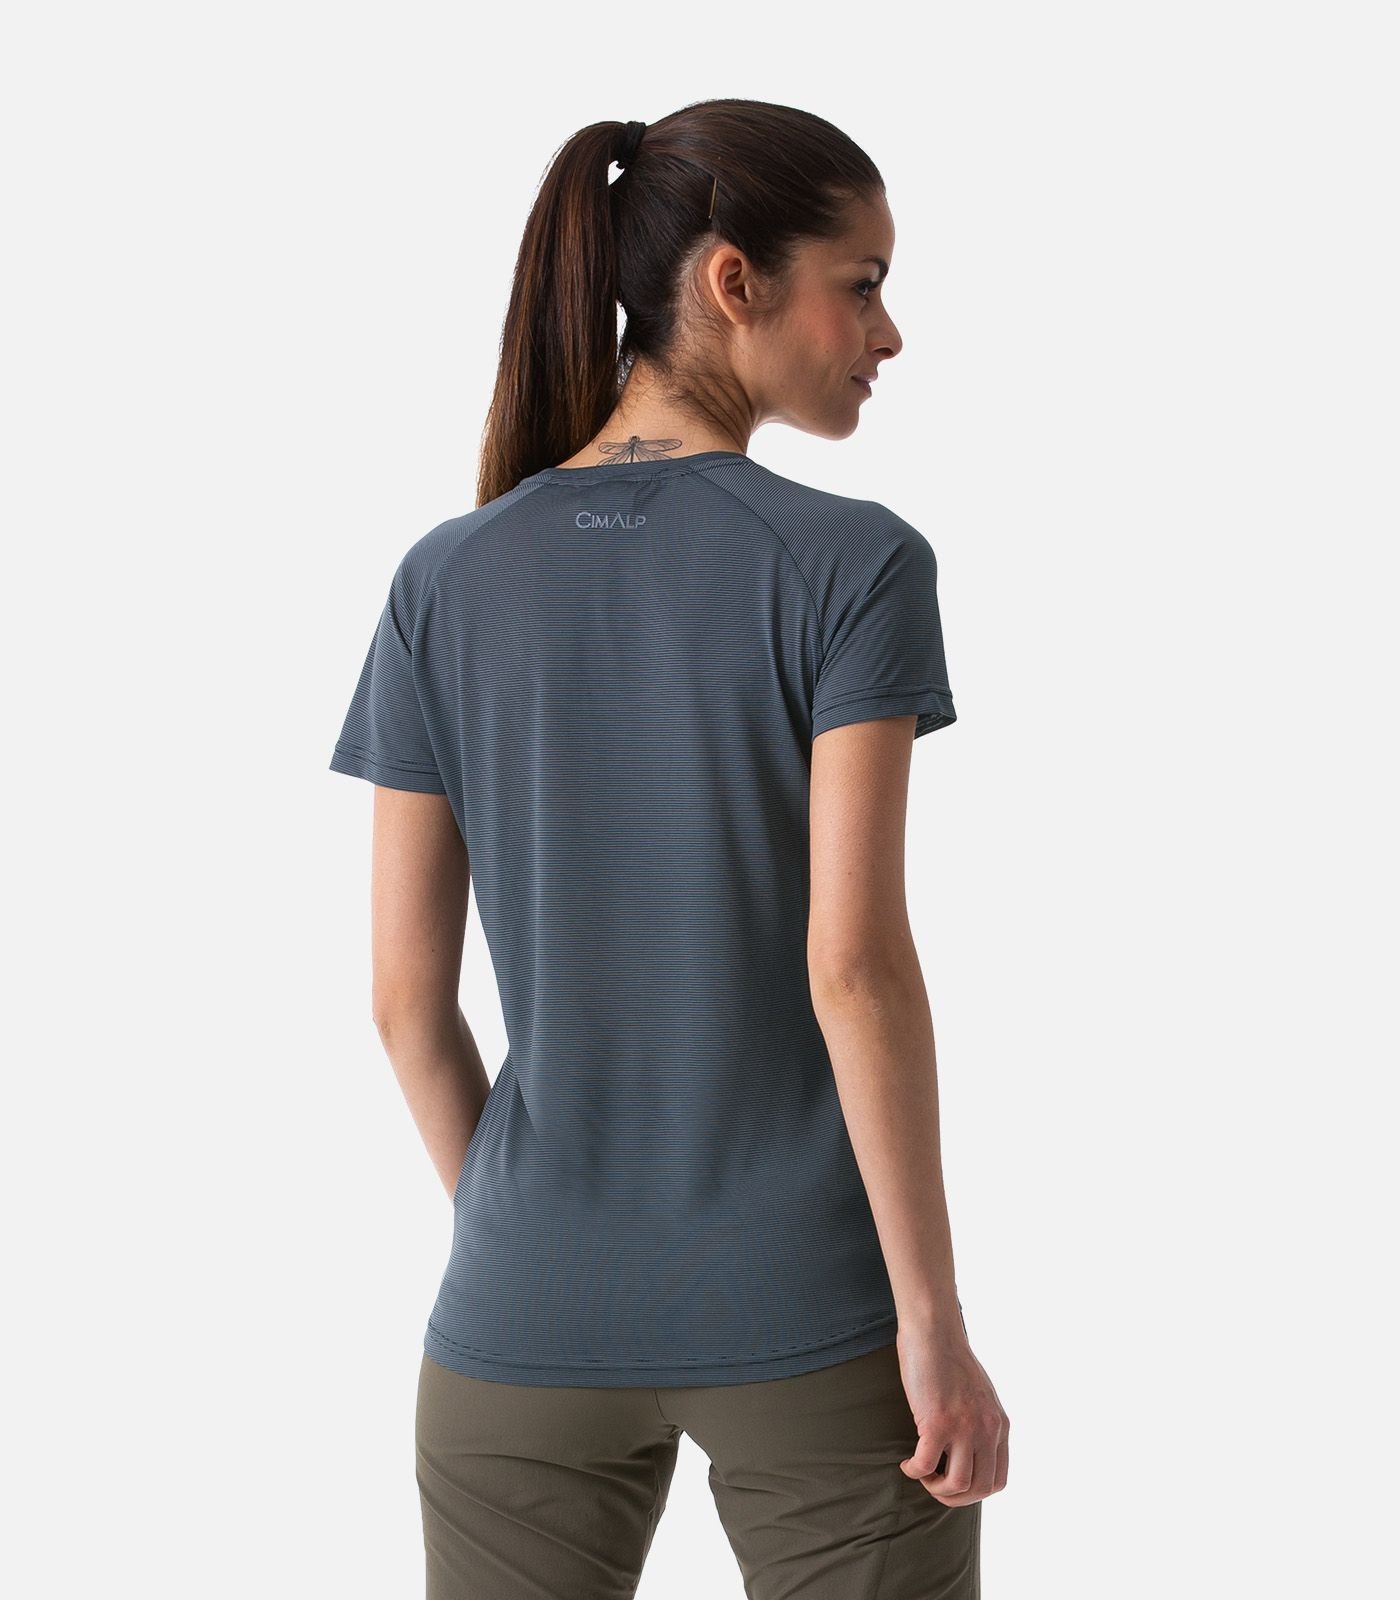 Ultraleichtes, atmungsaktives T-Shirt